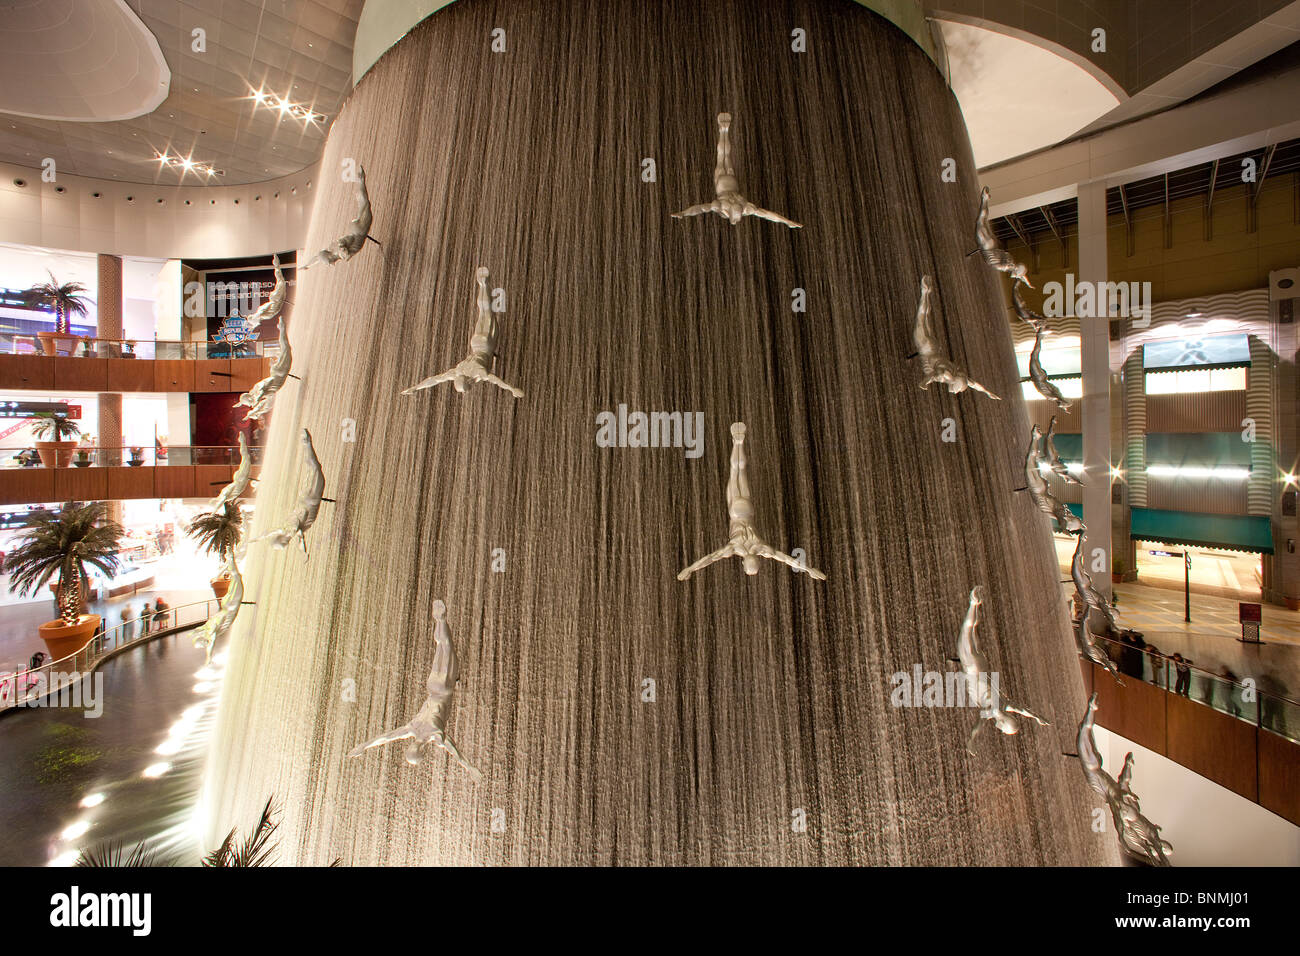 Dubai Vereinigte Arabische Emirate Naher Osten VAE Wasserfall  Einkaufszentrum Dubai Mall Zahlen innen einkaufen Architektur  Stockfotografie - Alamy